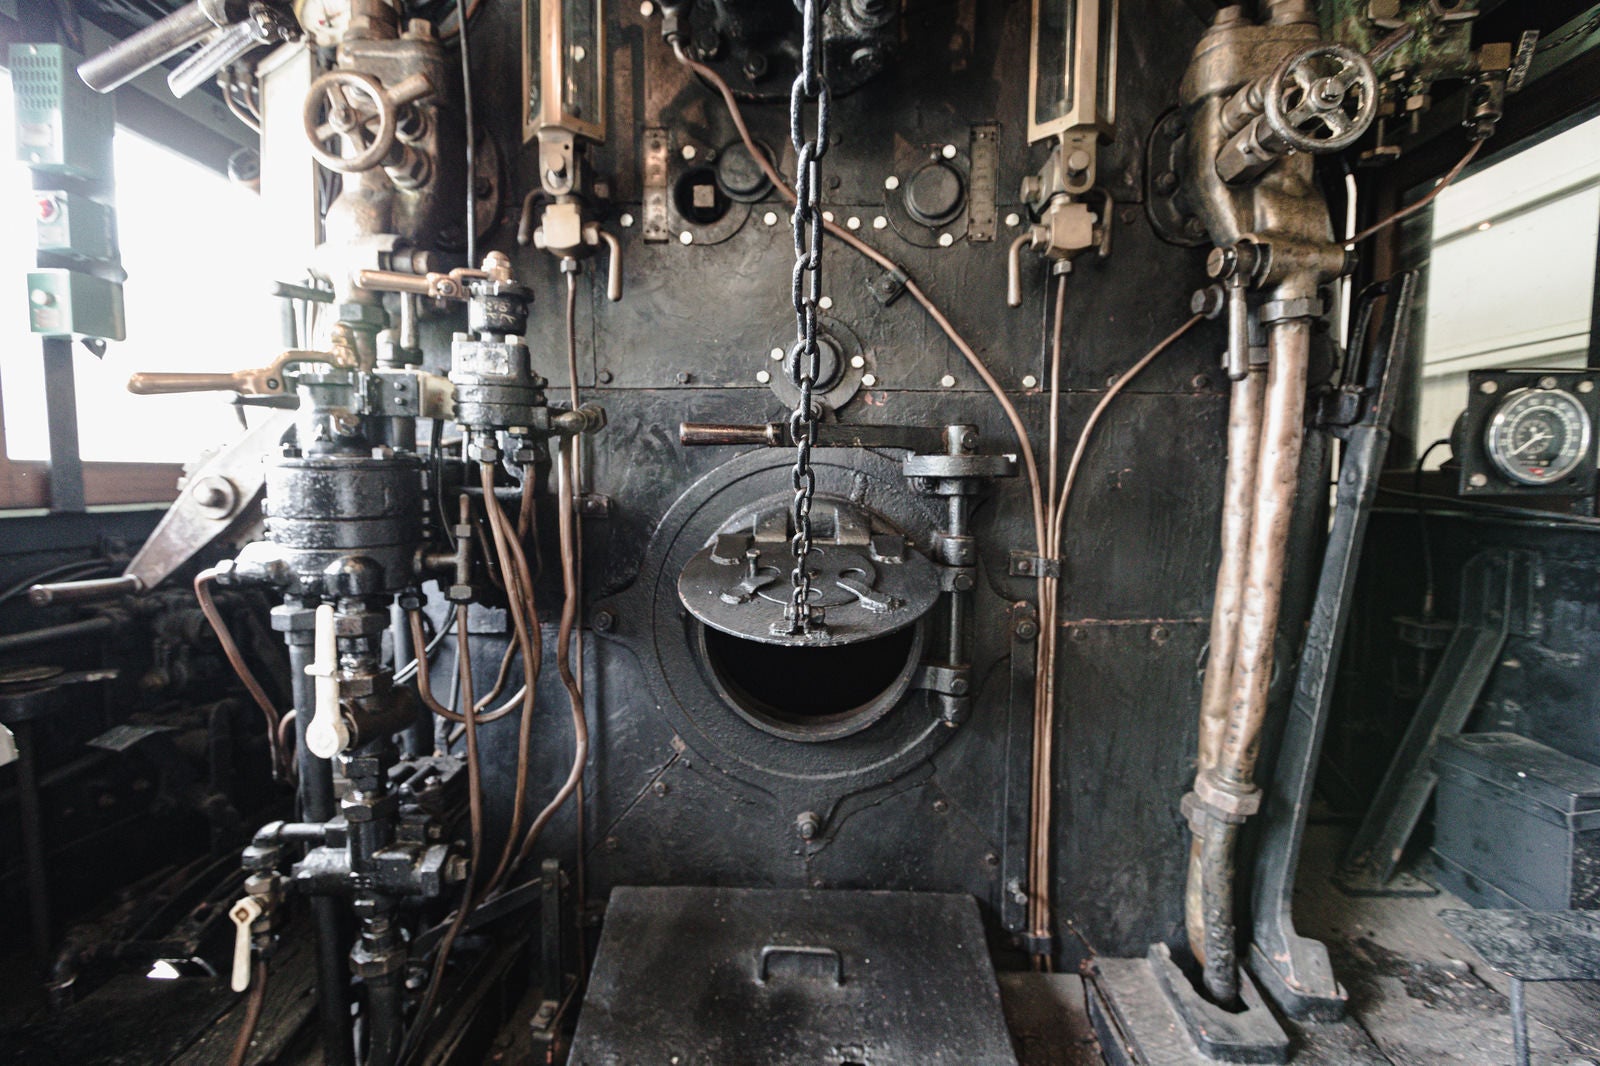 「静態保存蒸気機関車・9600形59647号機の機関室内の様子」の写真